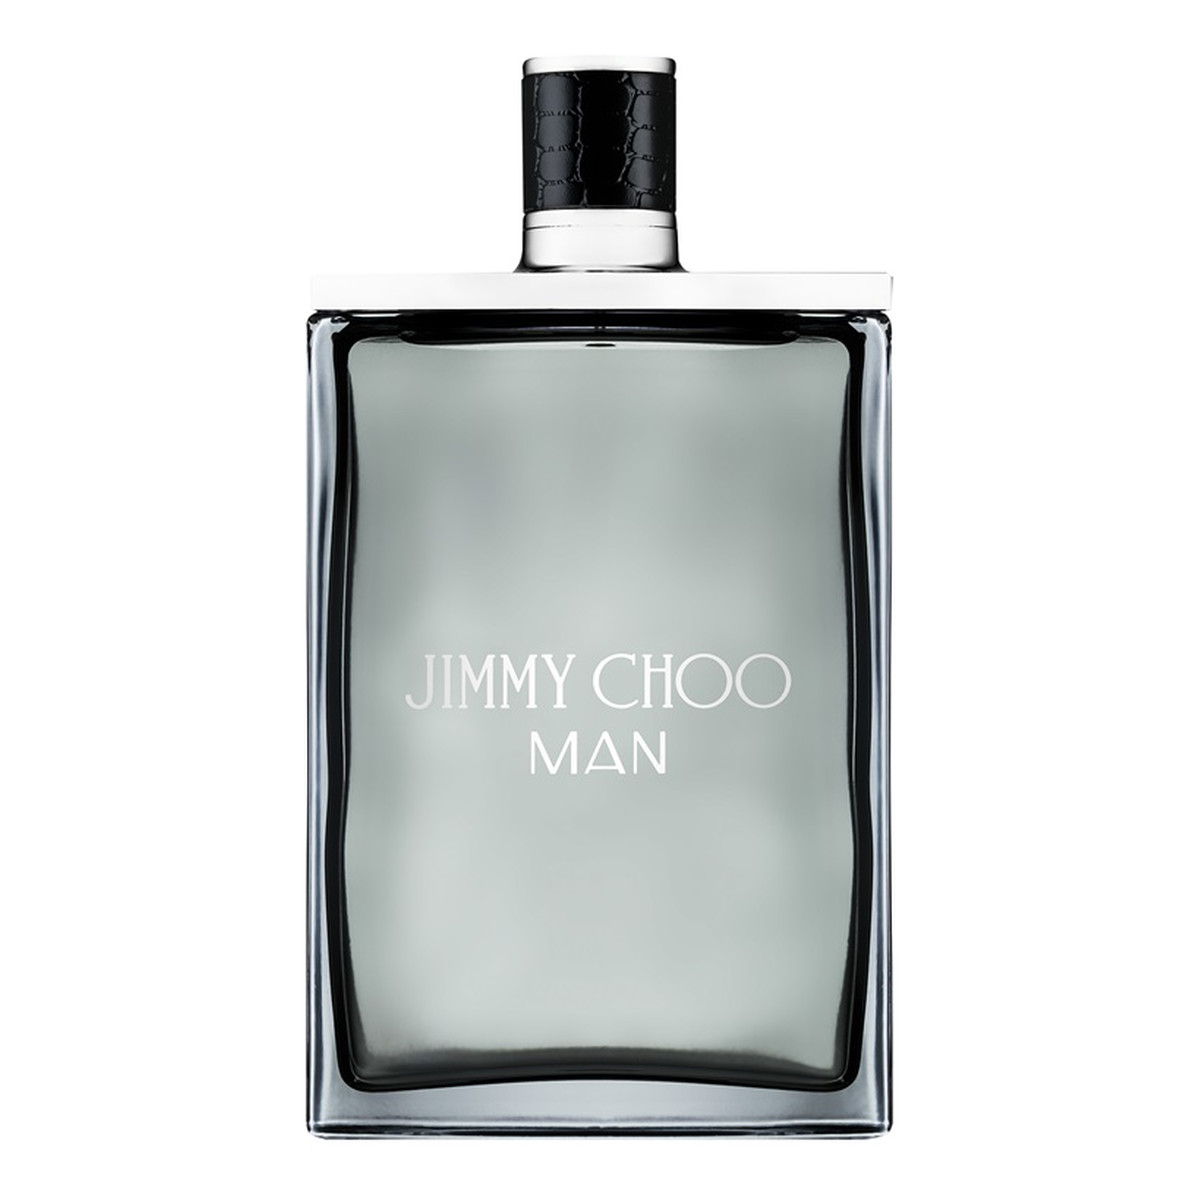 Jimmy Choo Man woda toaletowa 200ml